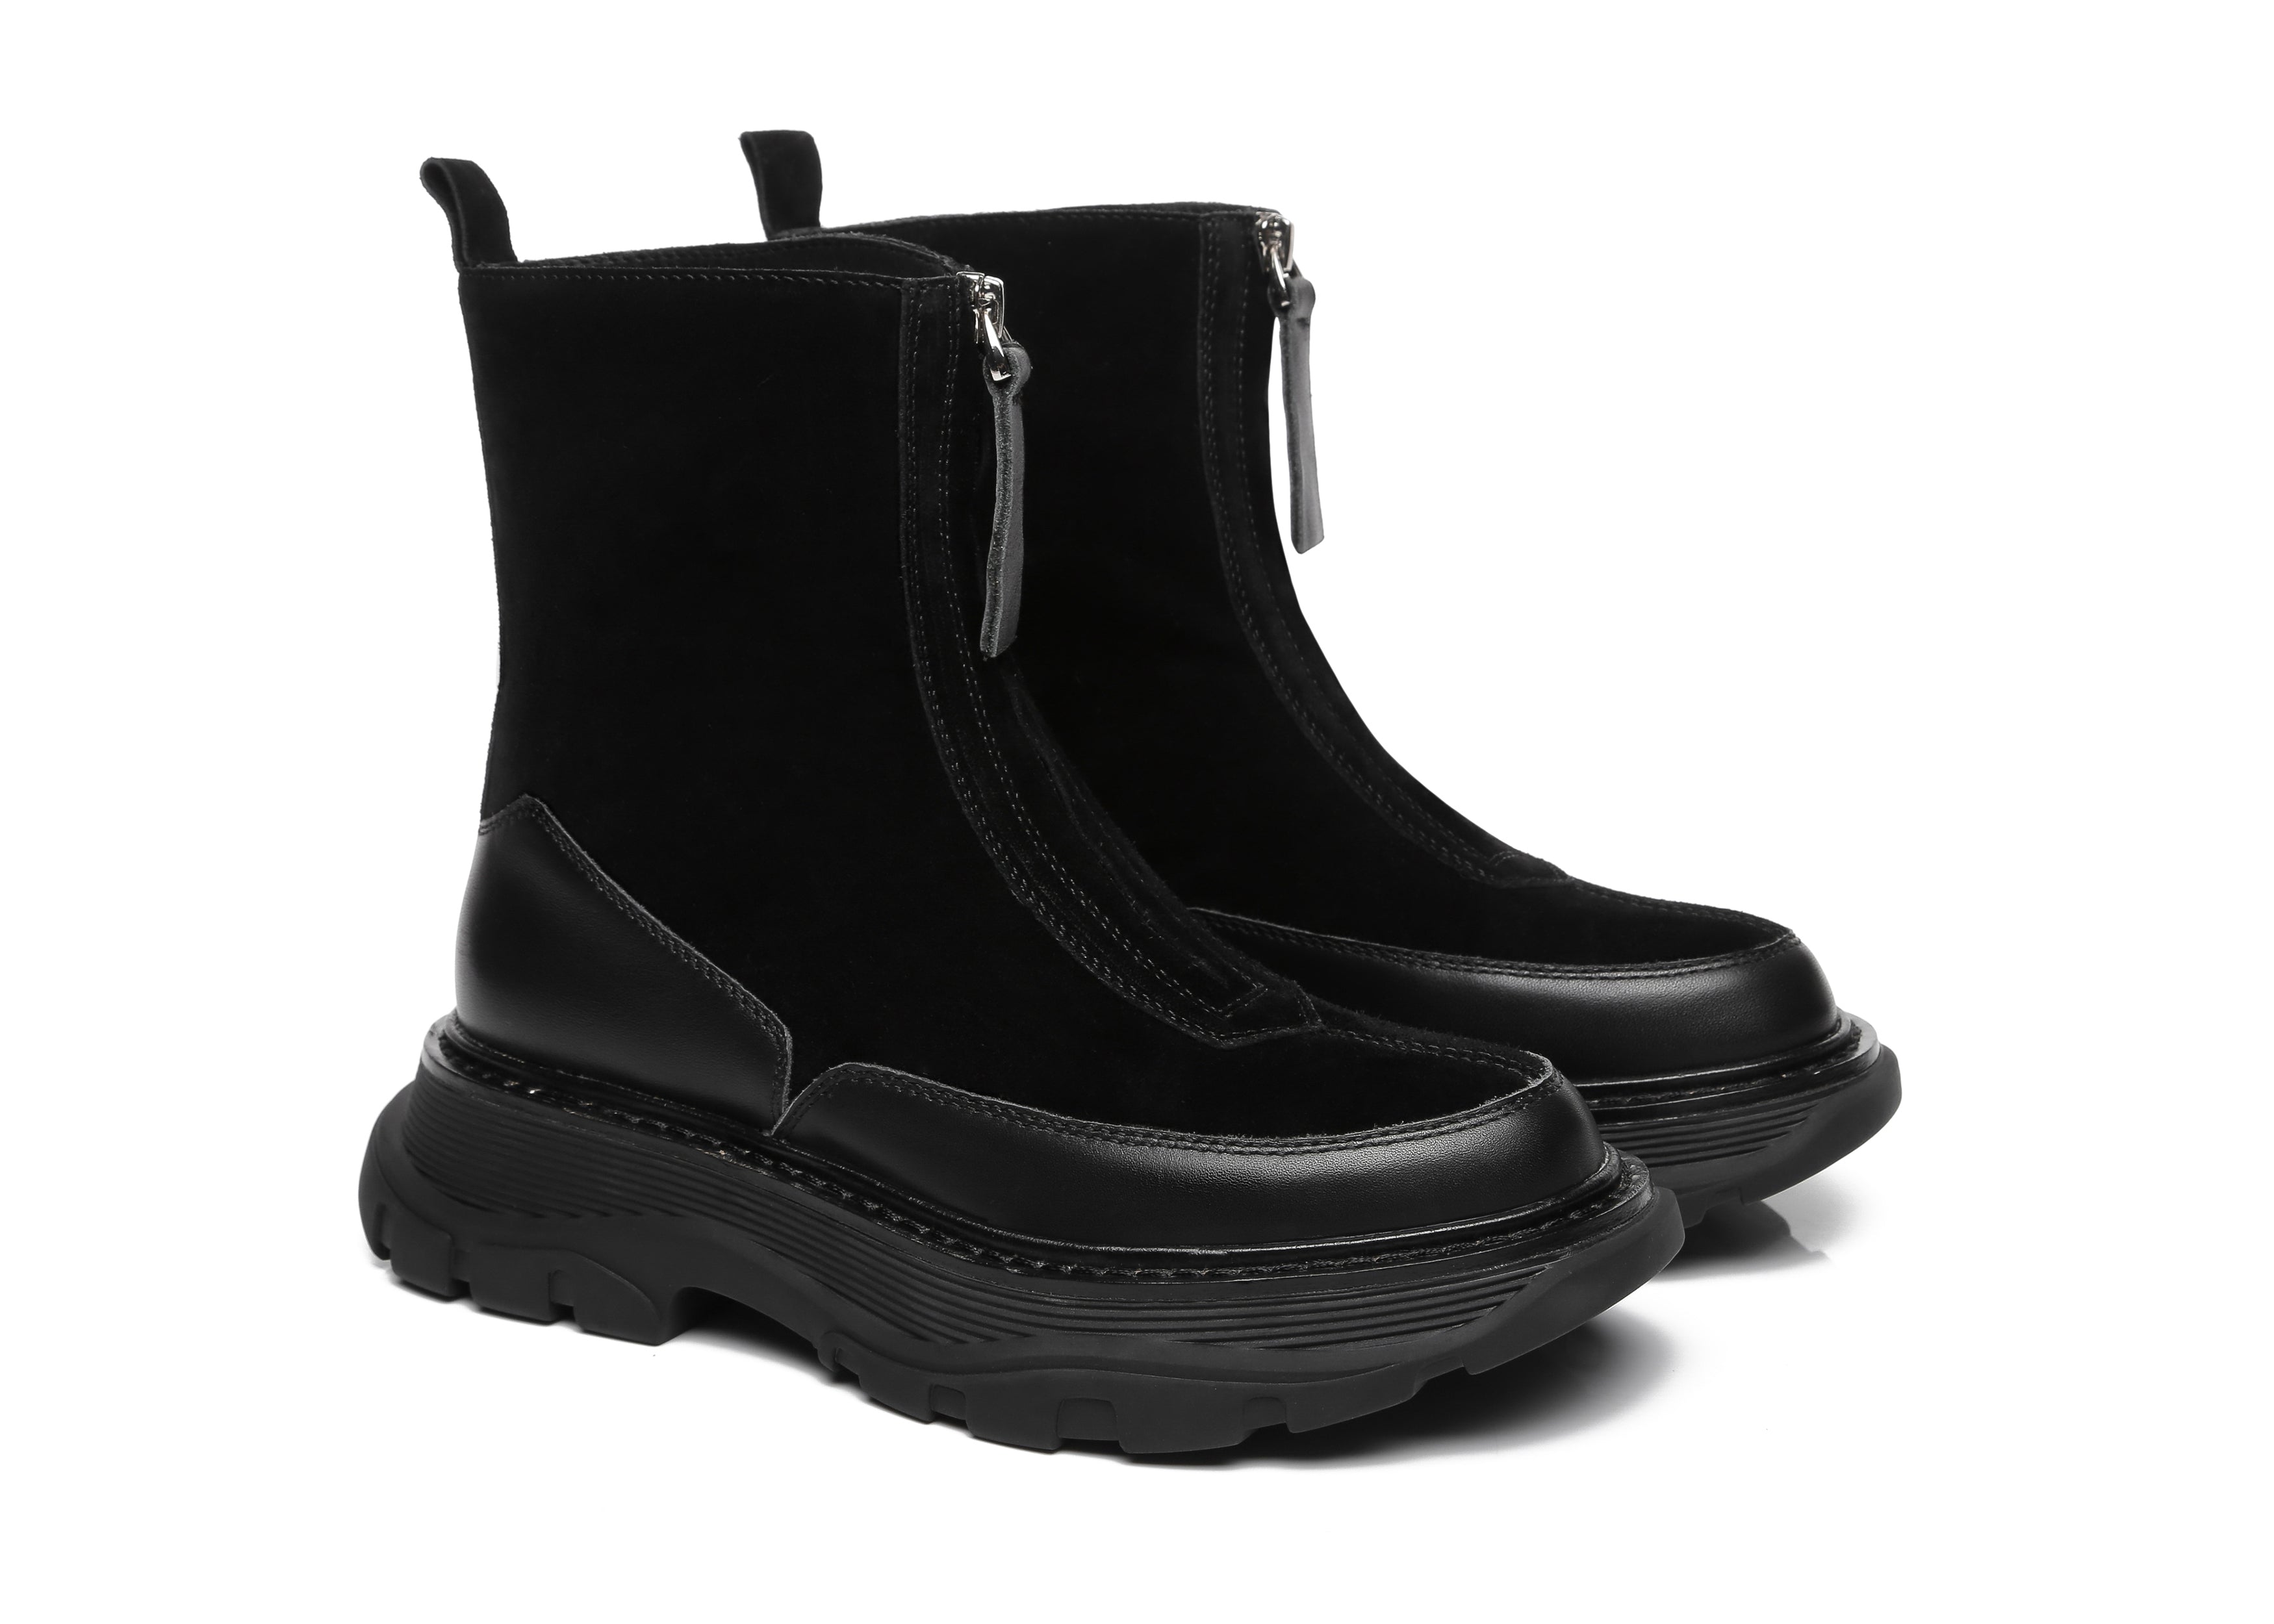 EVERAU® Ankle Zip Boots Women Henley - Boots - Black - AU Ladies 4 / AU Men 2 / EU 35 - Uggoutlet